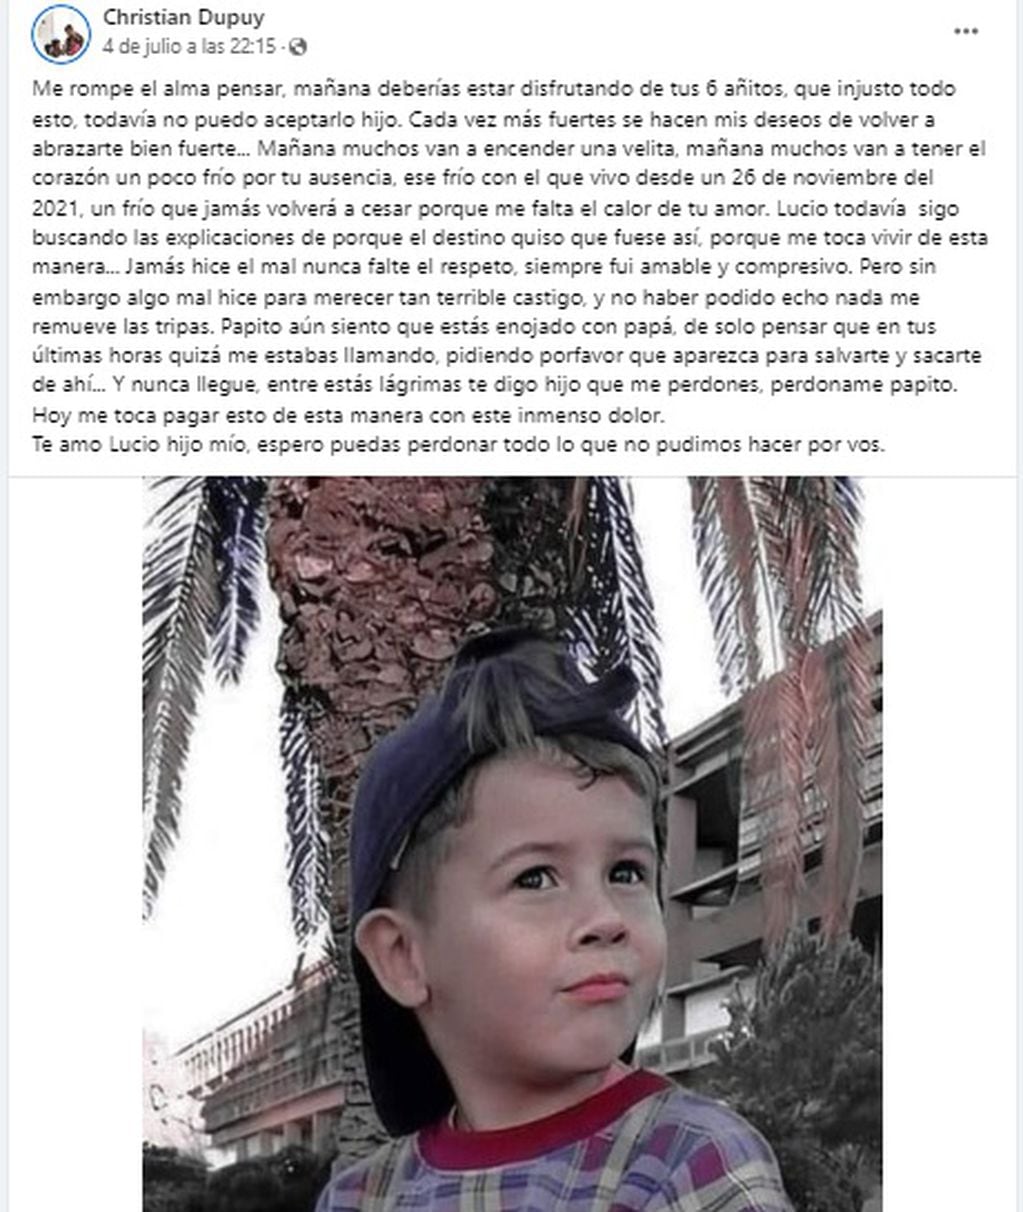 El padre de Lucio Dupuy, el niño asesinado por su madre y la pareja de ella en La Pampa, le dedicó un posteo en Facebook por lo que hubieran sido sus 6 años.